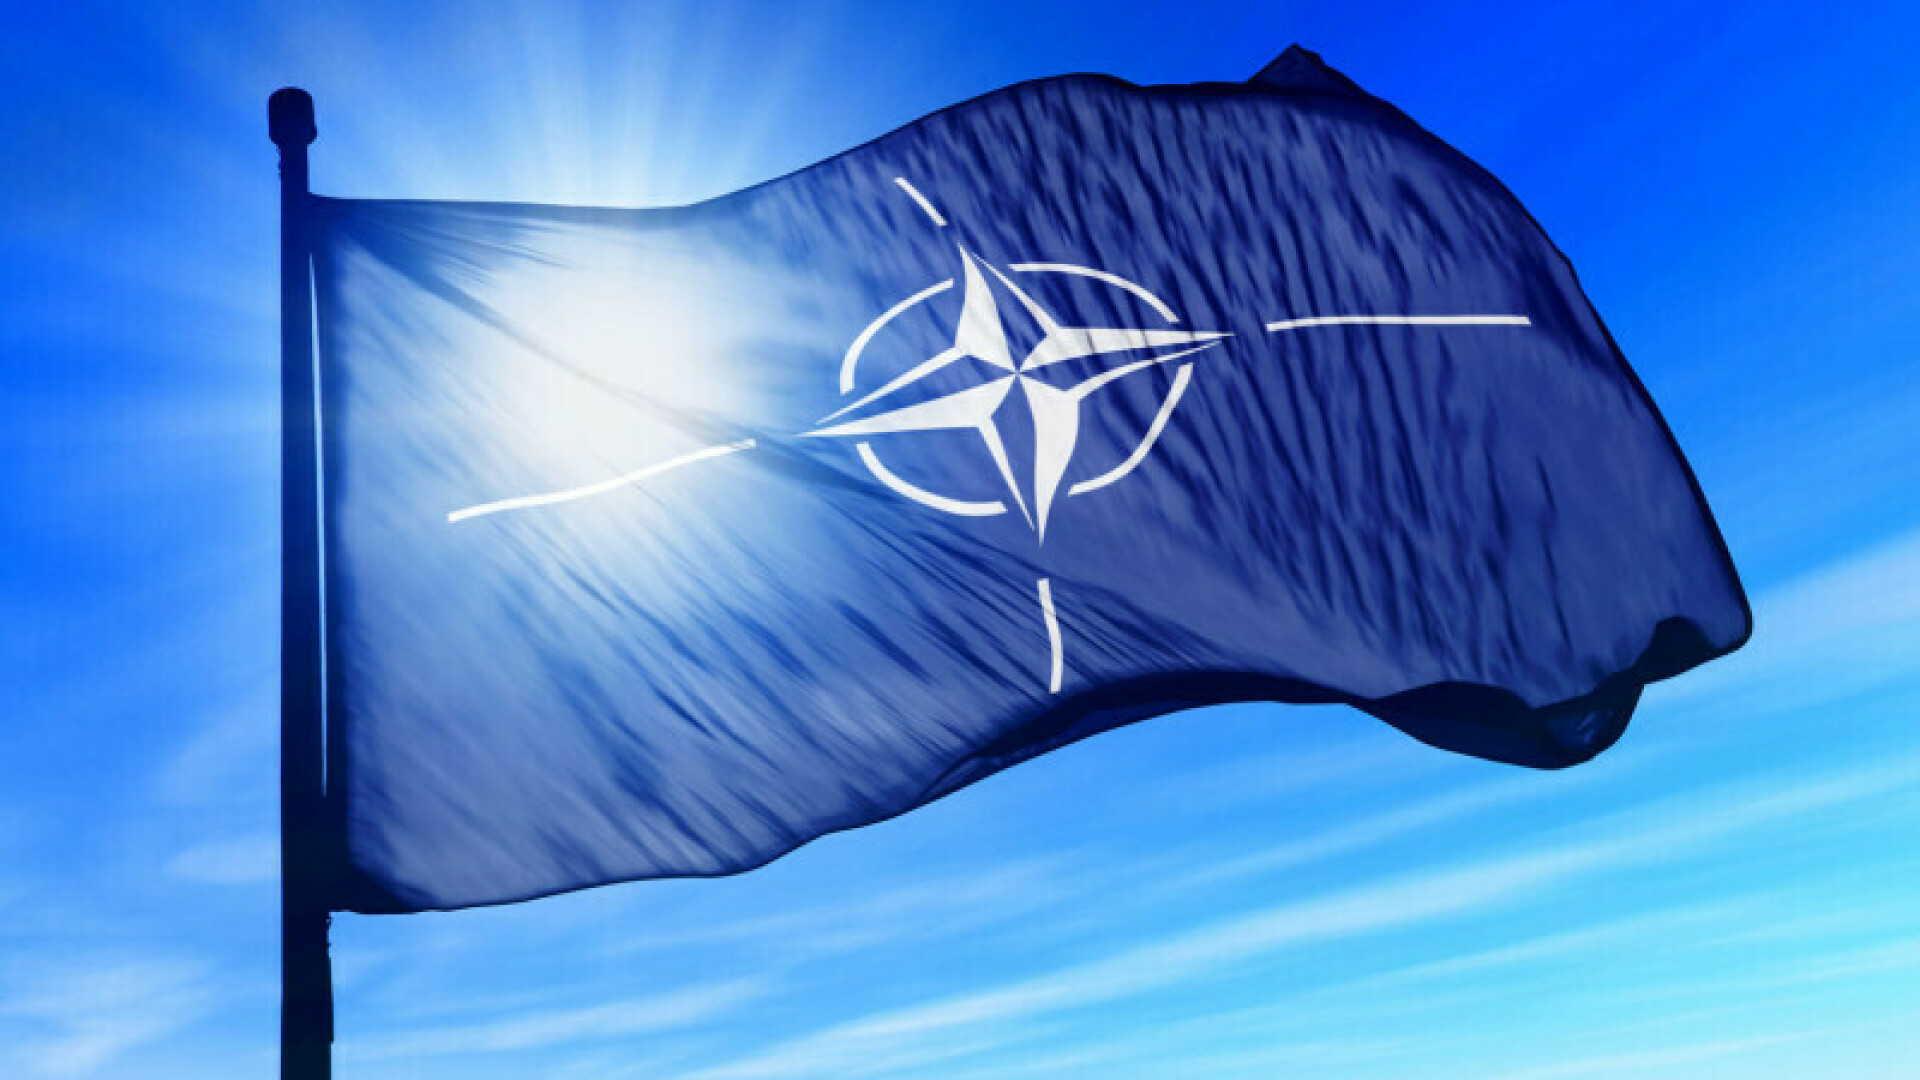 Conceptul Strategic NATO. Ce aduce nou, explică expertul Octavian Manea